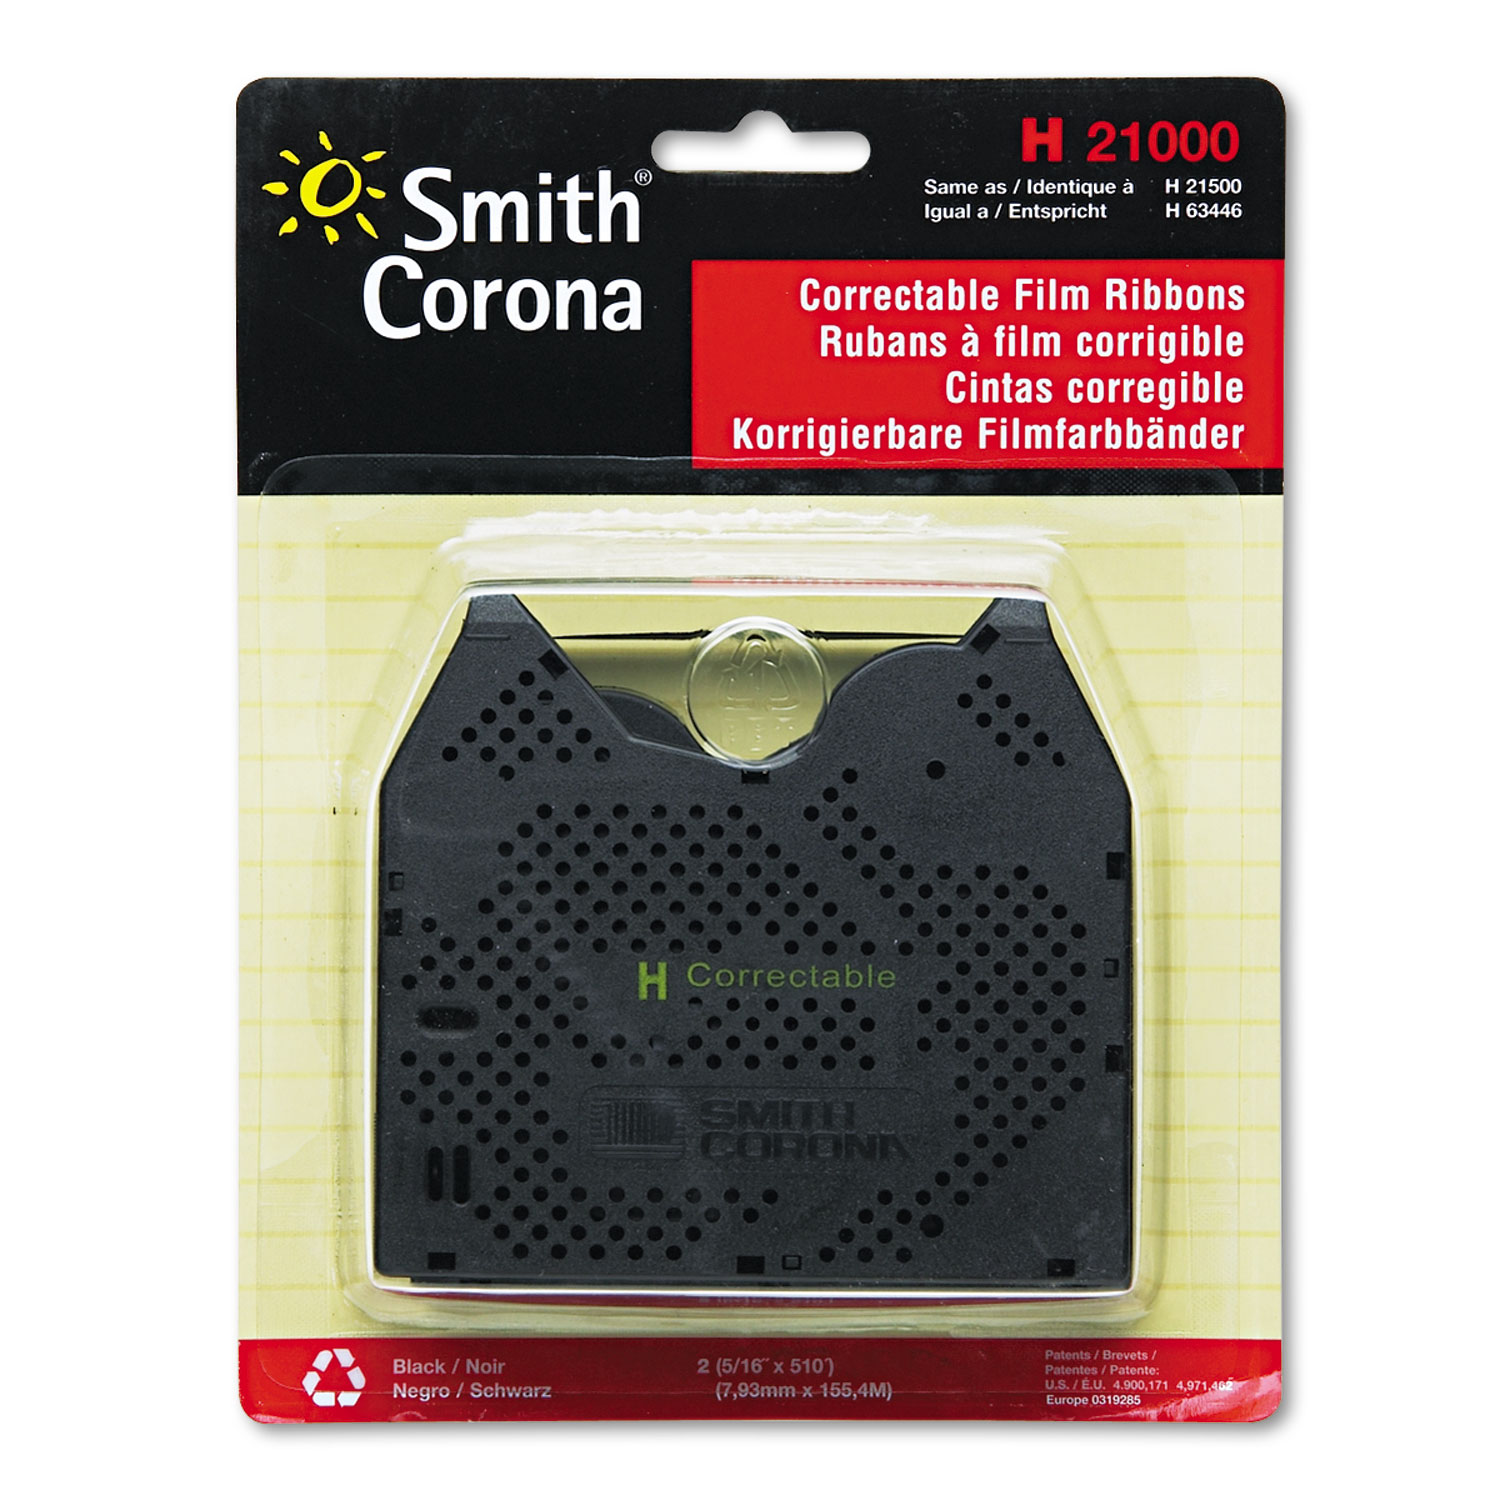  Smith Corona 21000 21000 Correctable Ribbon (SMC21000) 